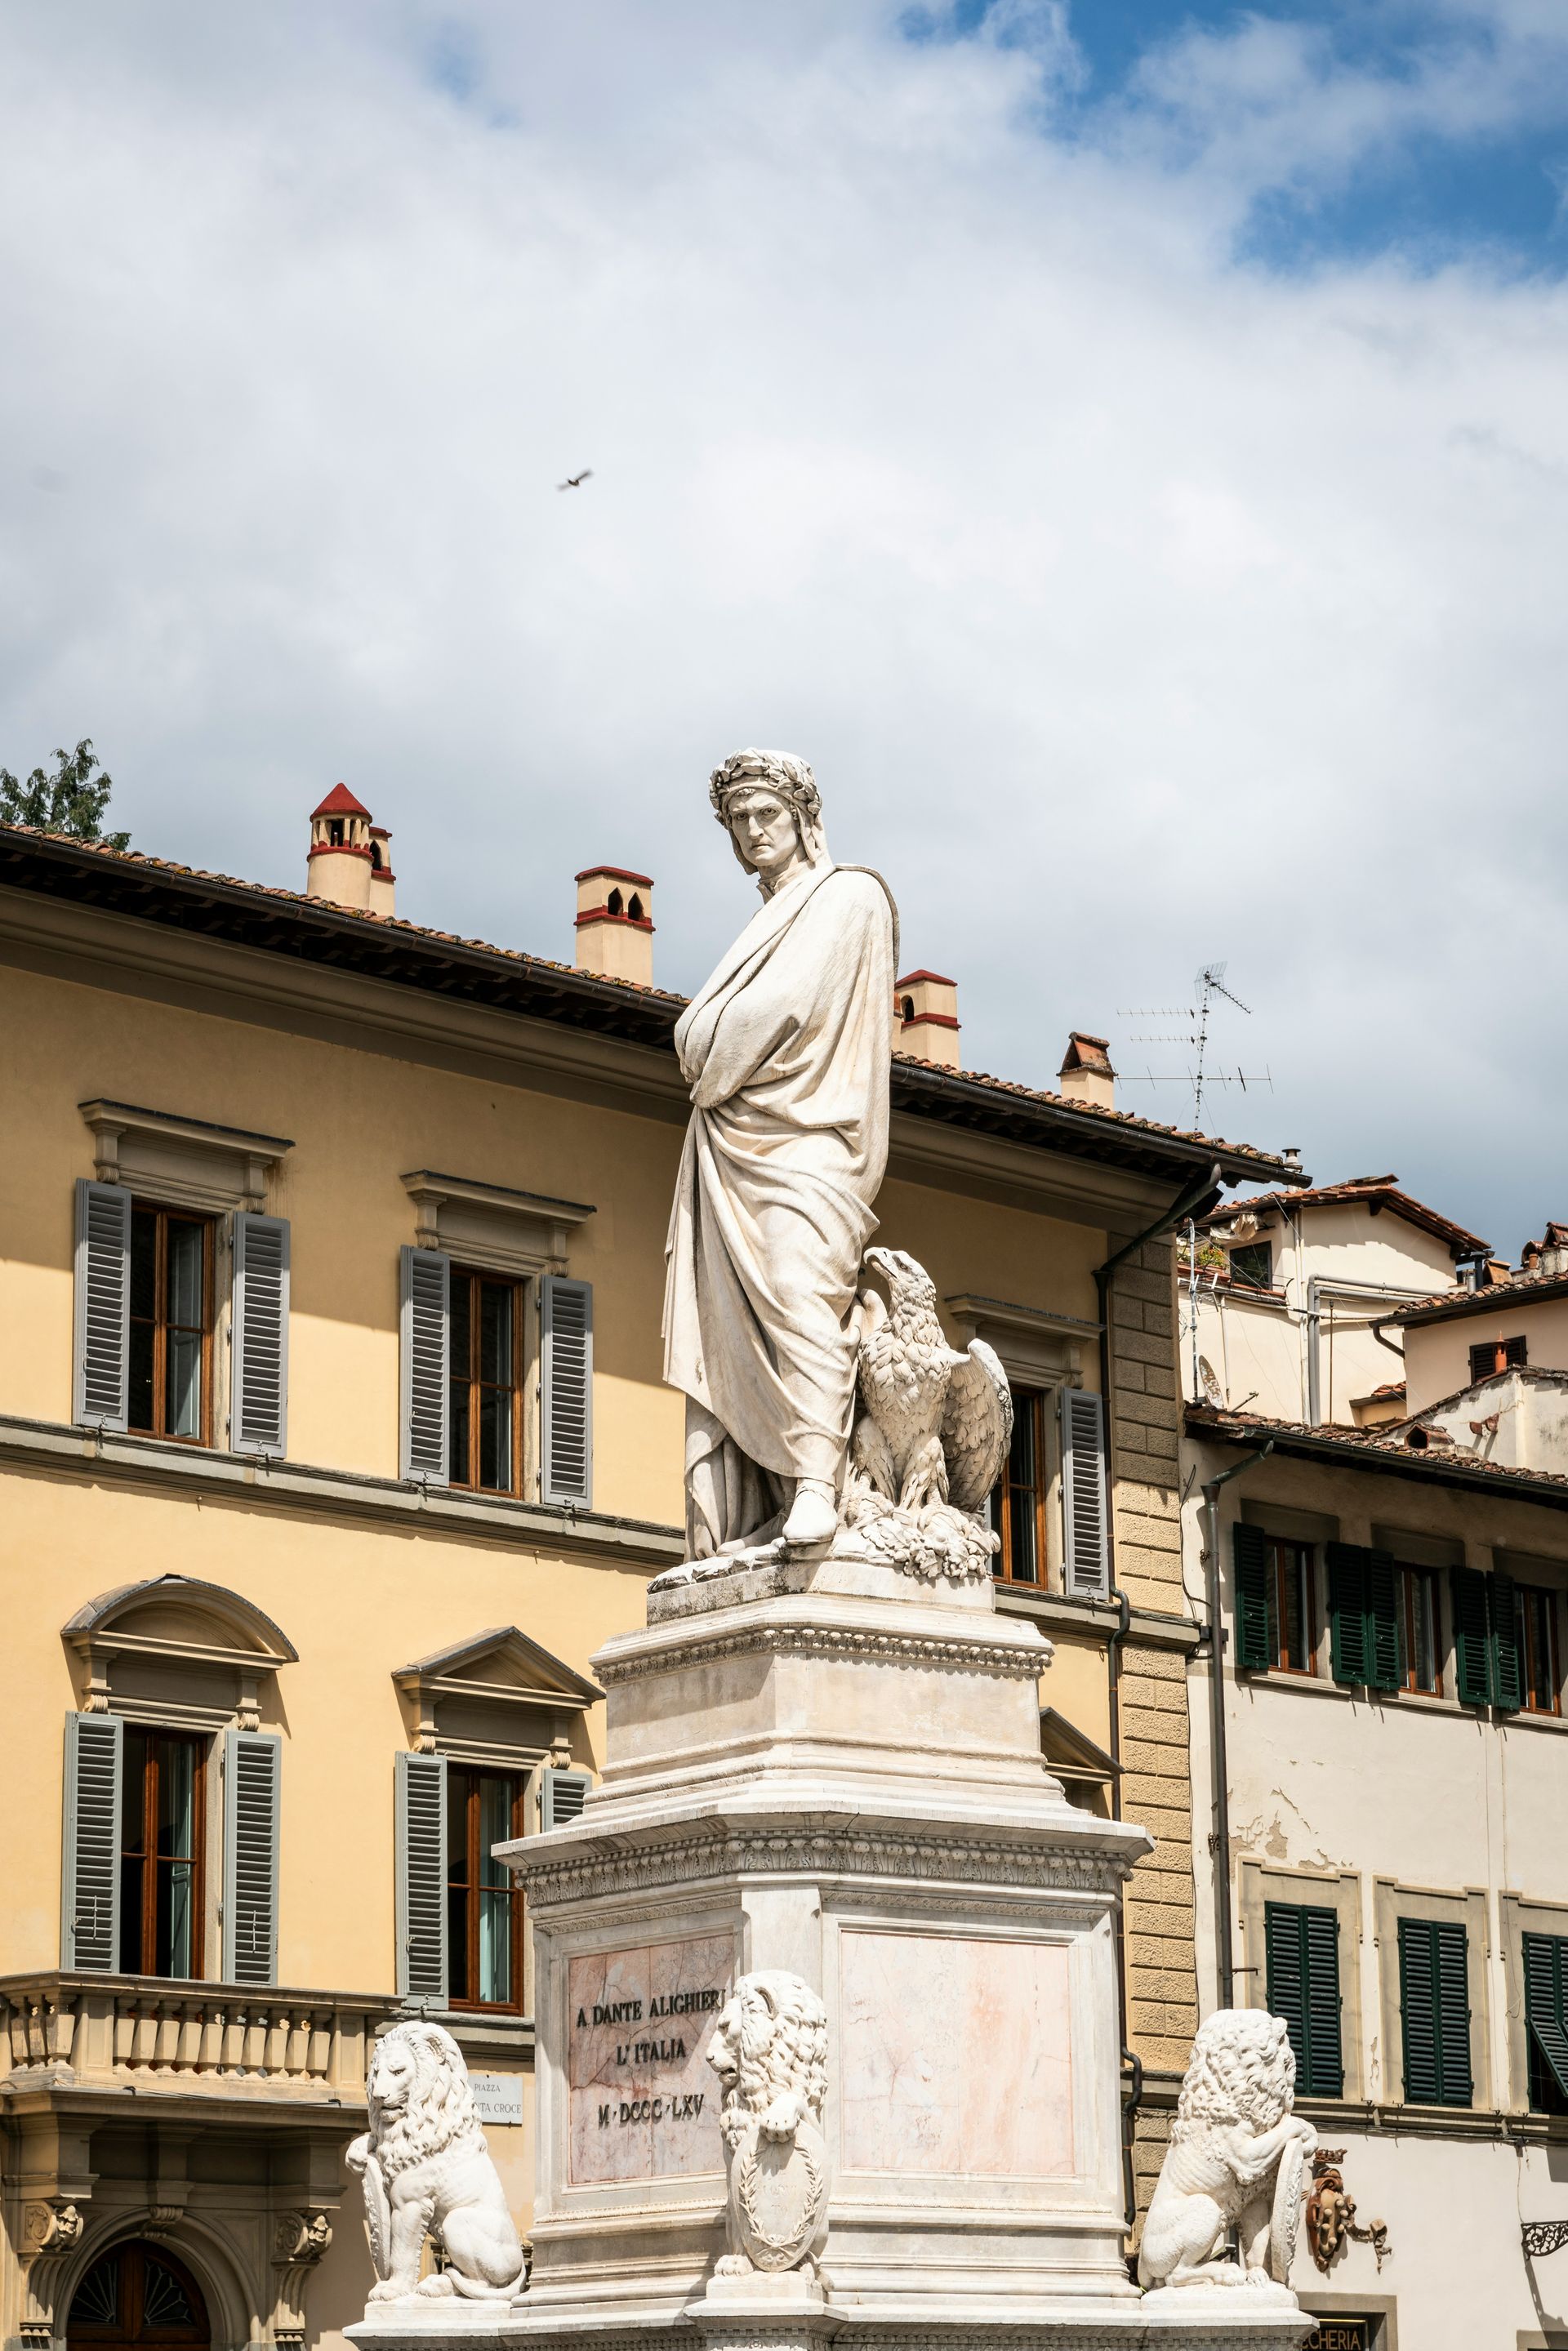 Dante Alighieri: A Cultural Luminary